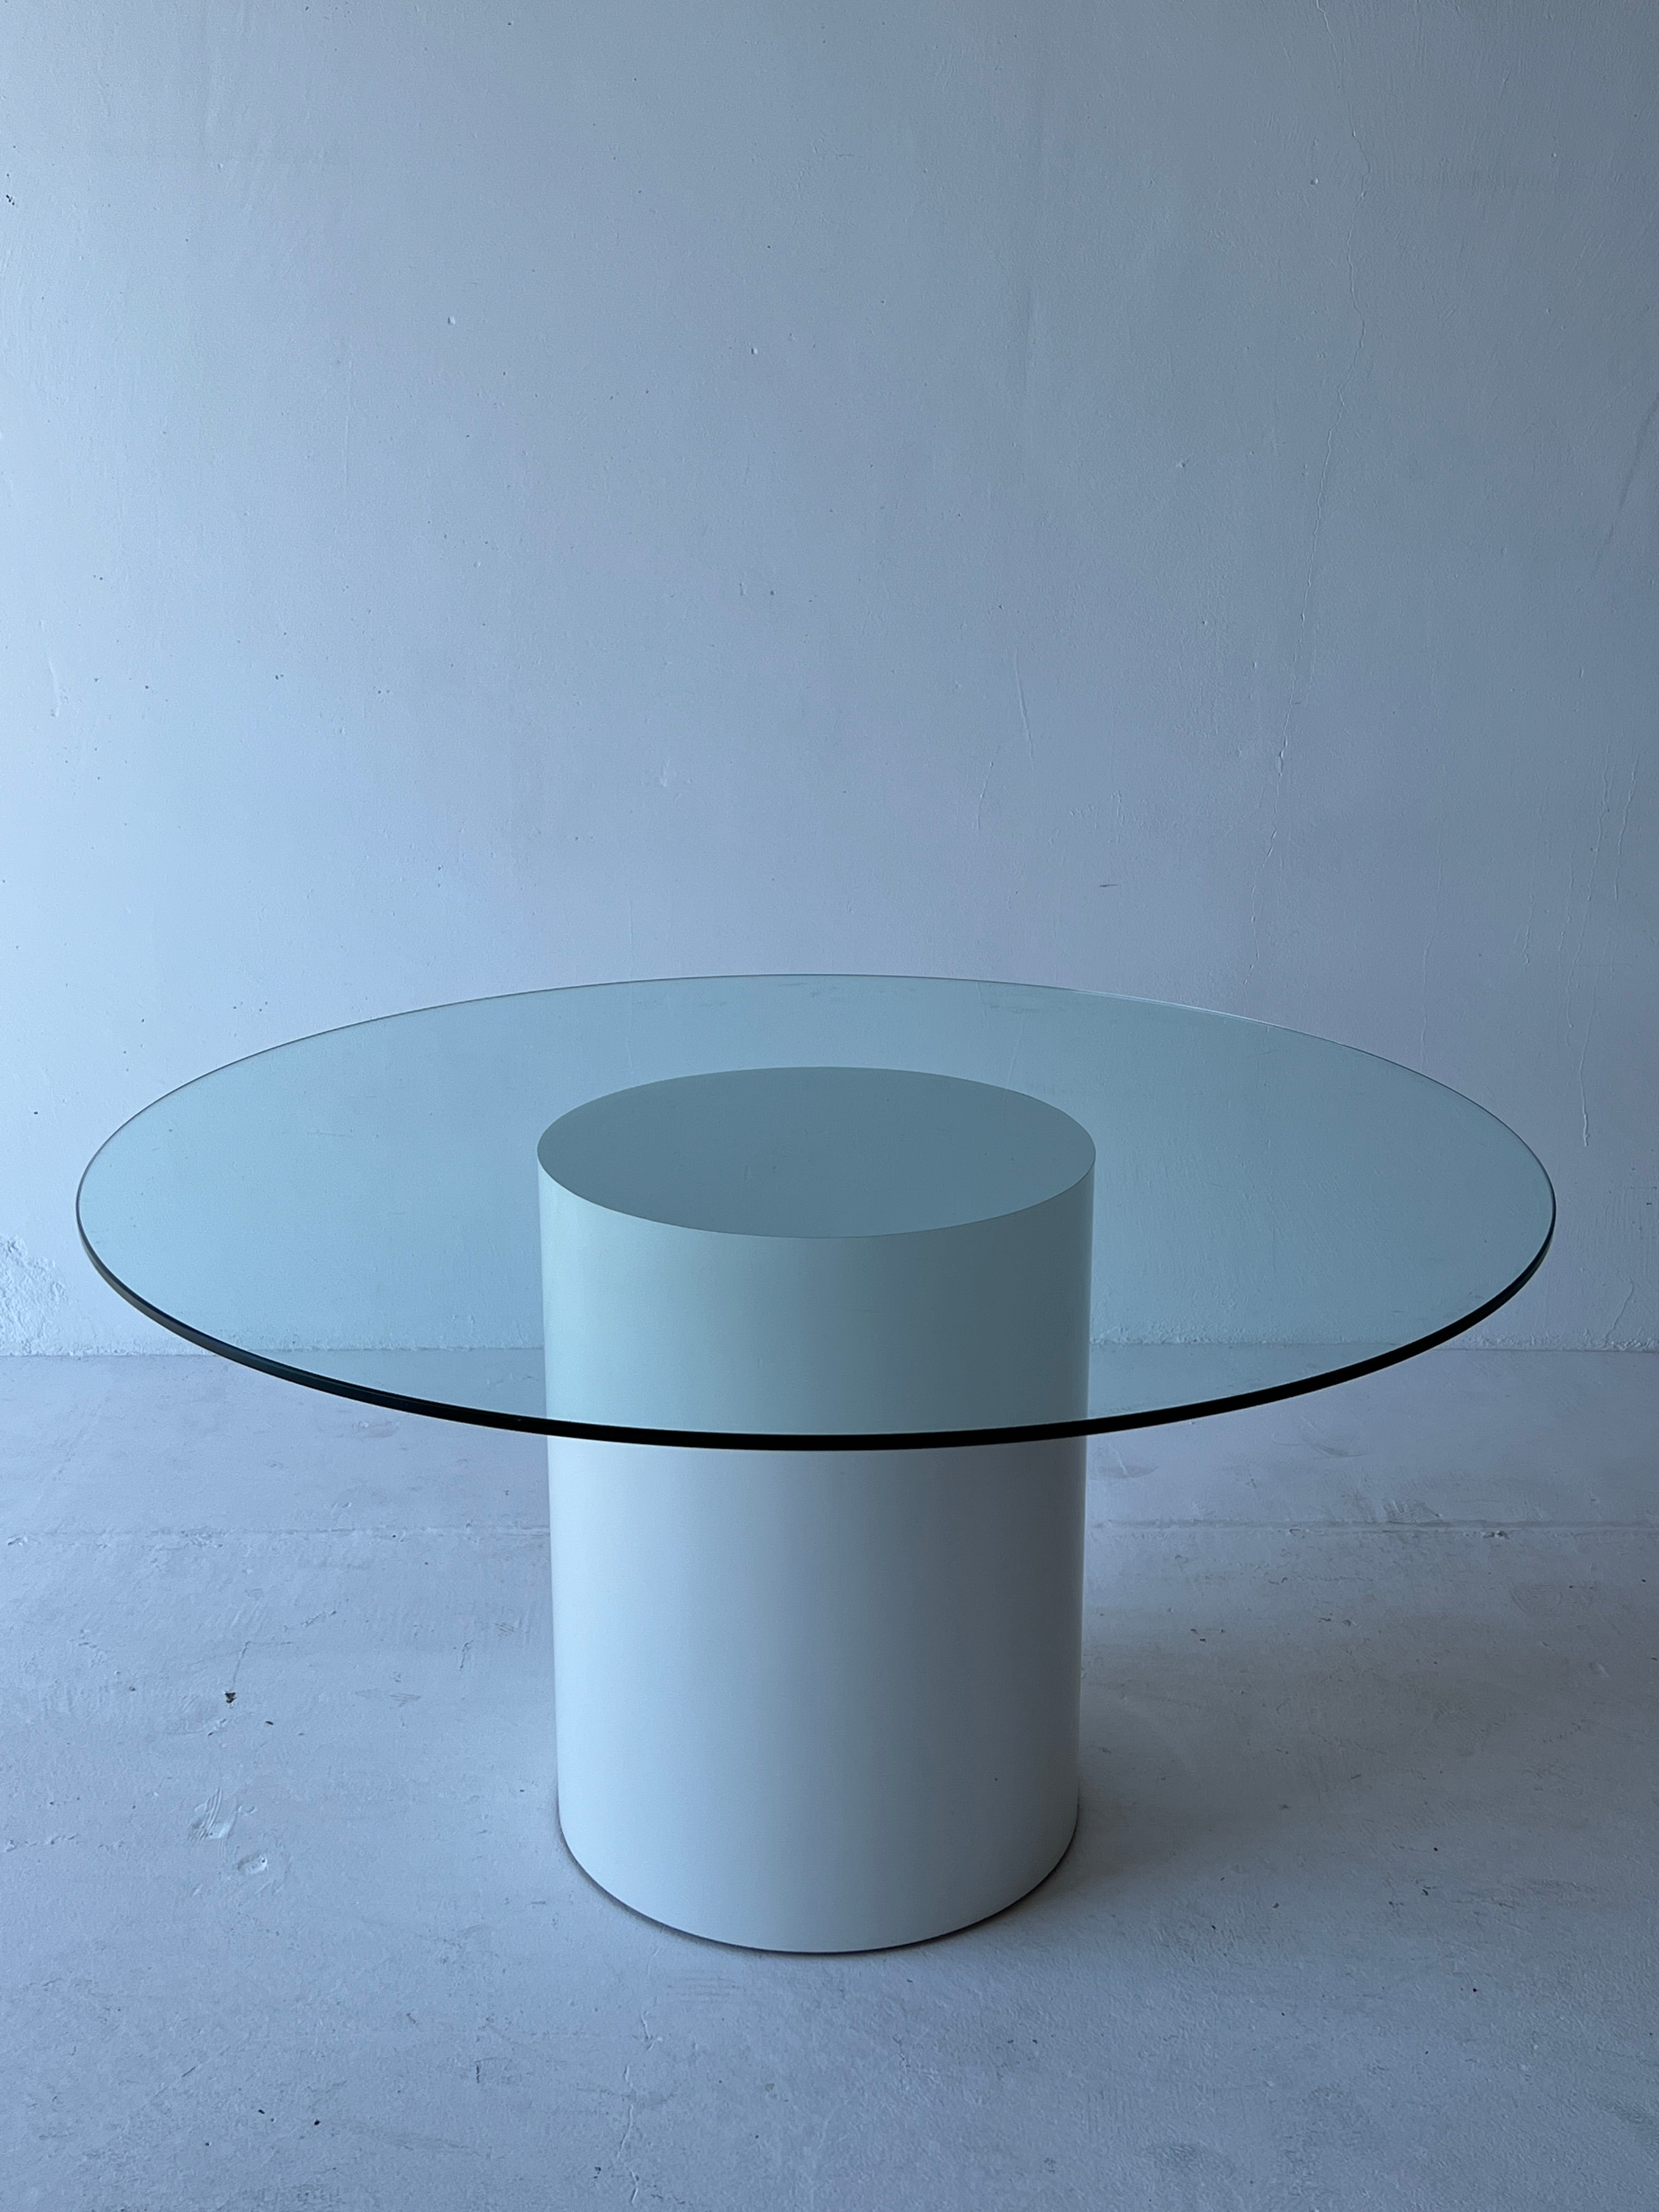 Laminate Pedestal Dining Table